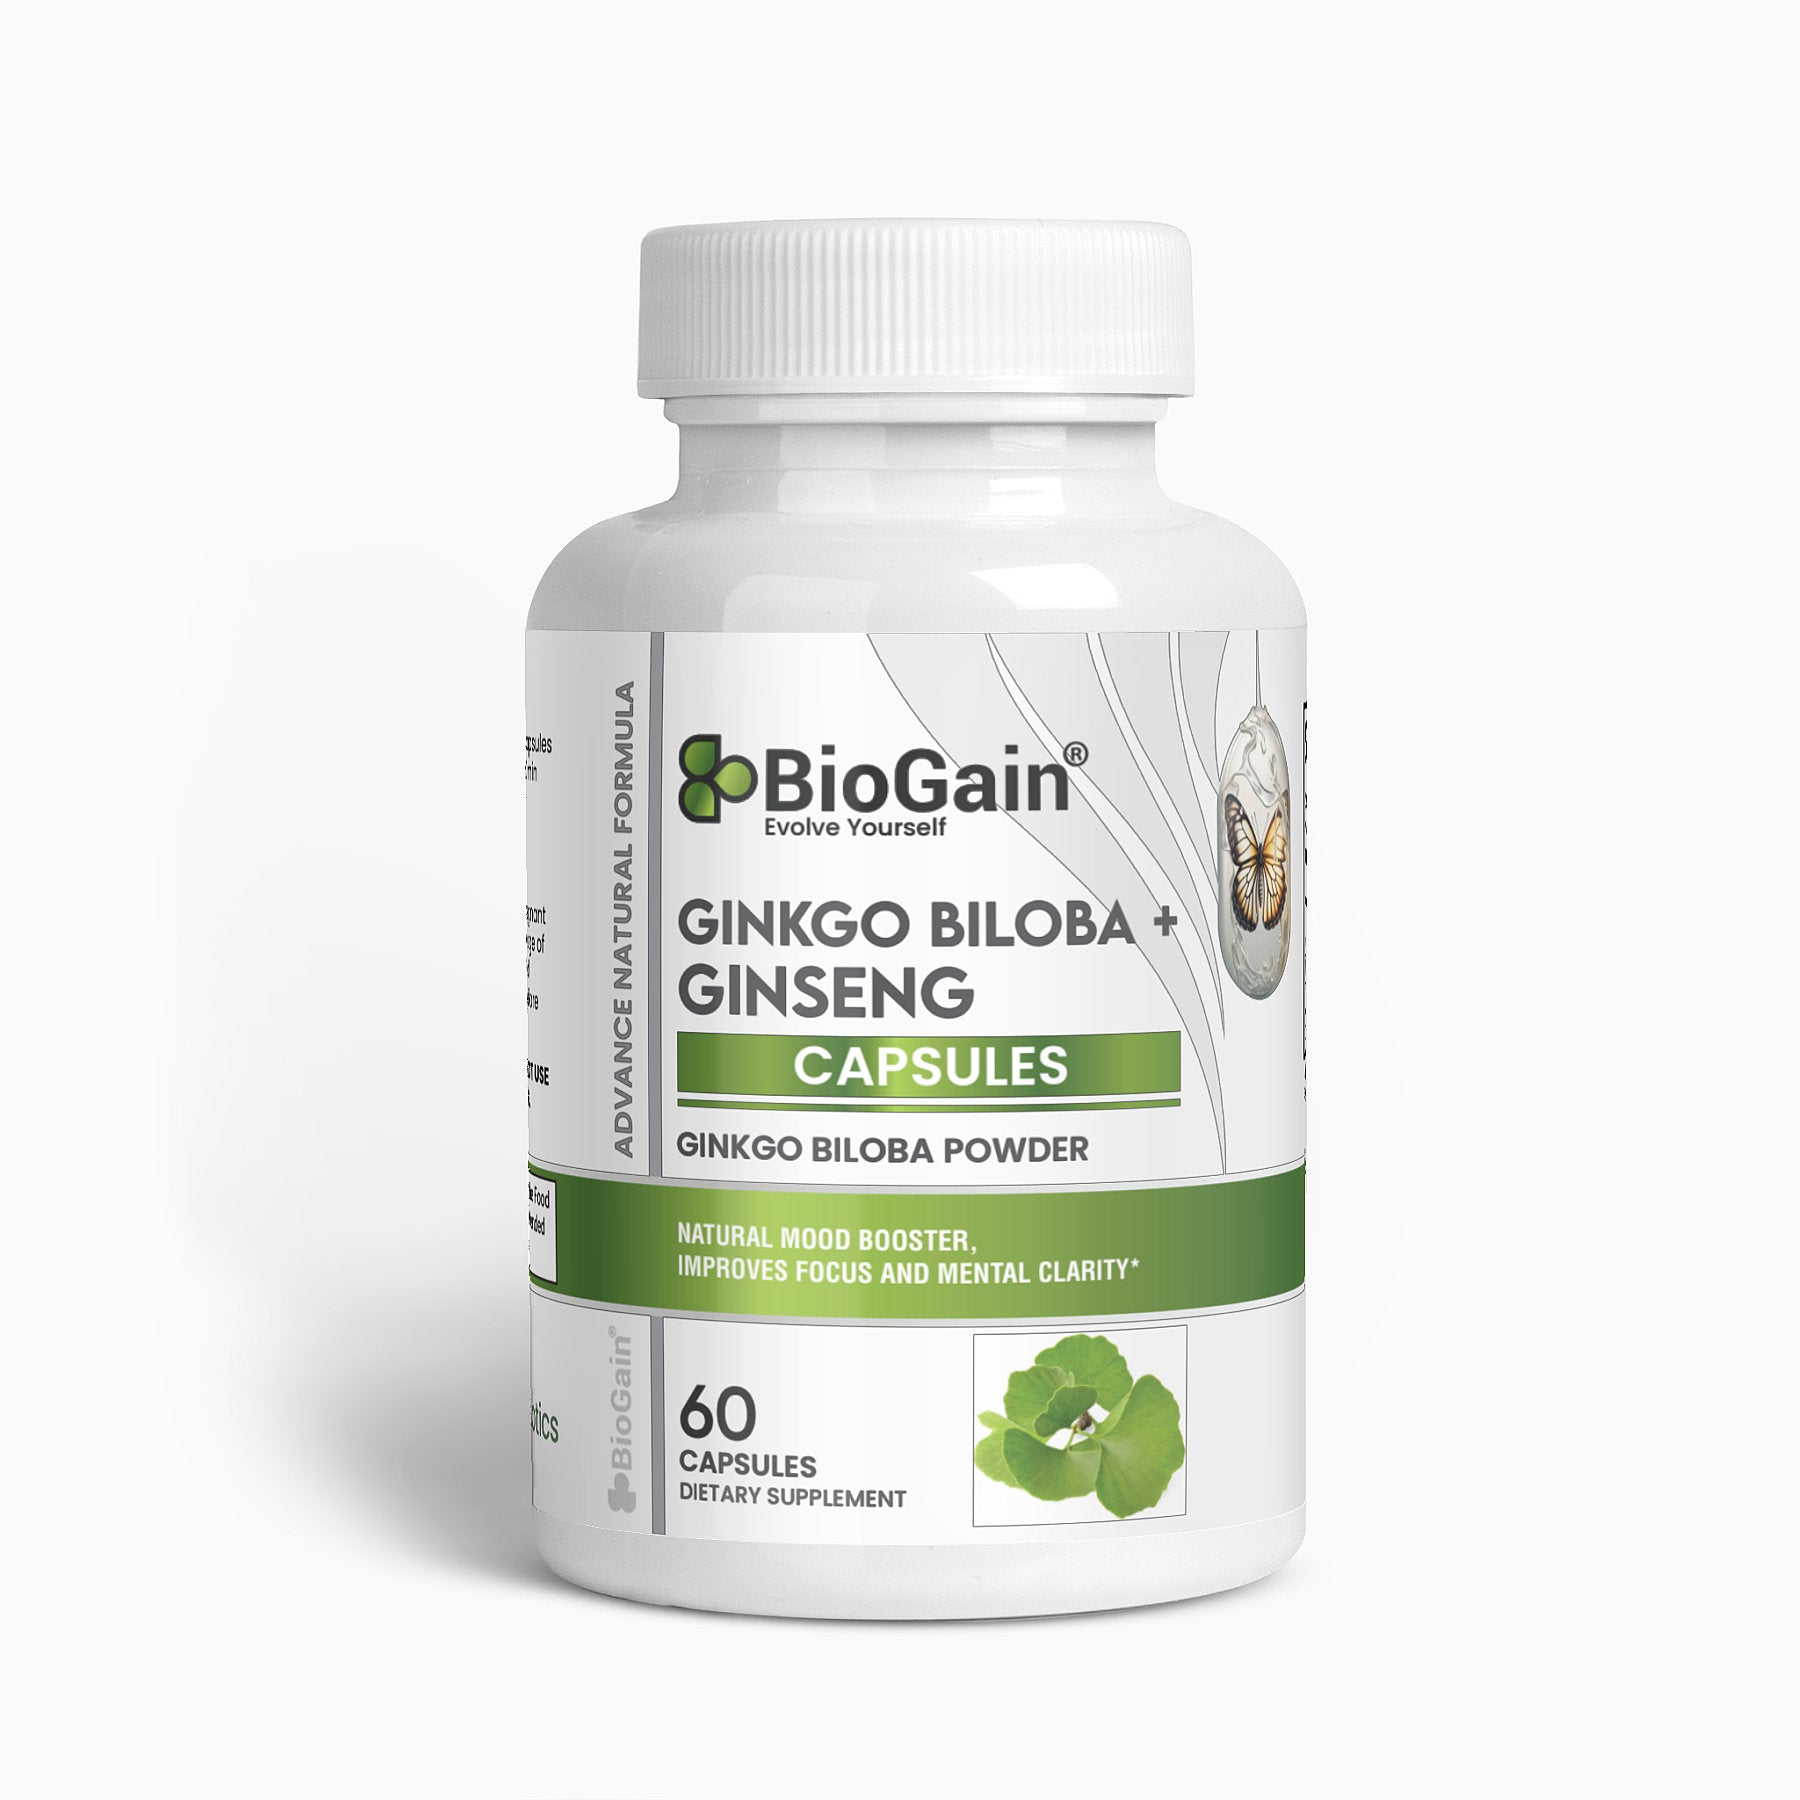 BioGain® Clarity Blend: Ginkgo Biloba + Ginseng Capsules